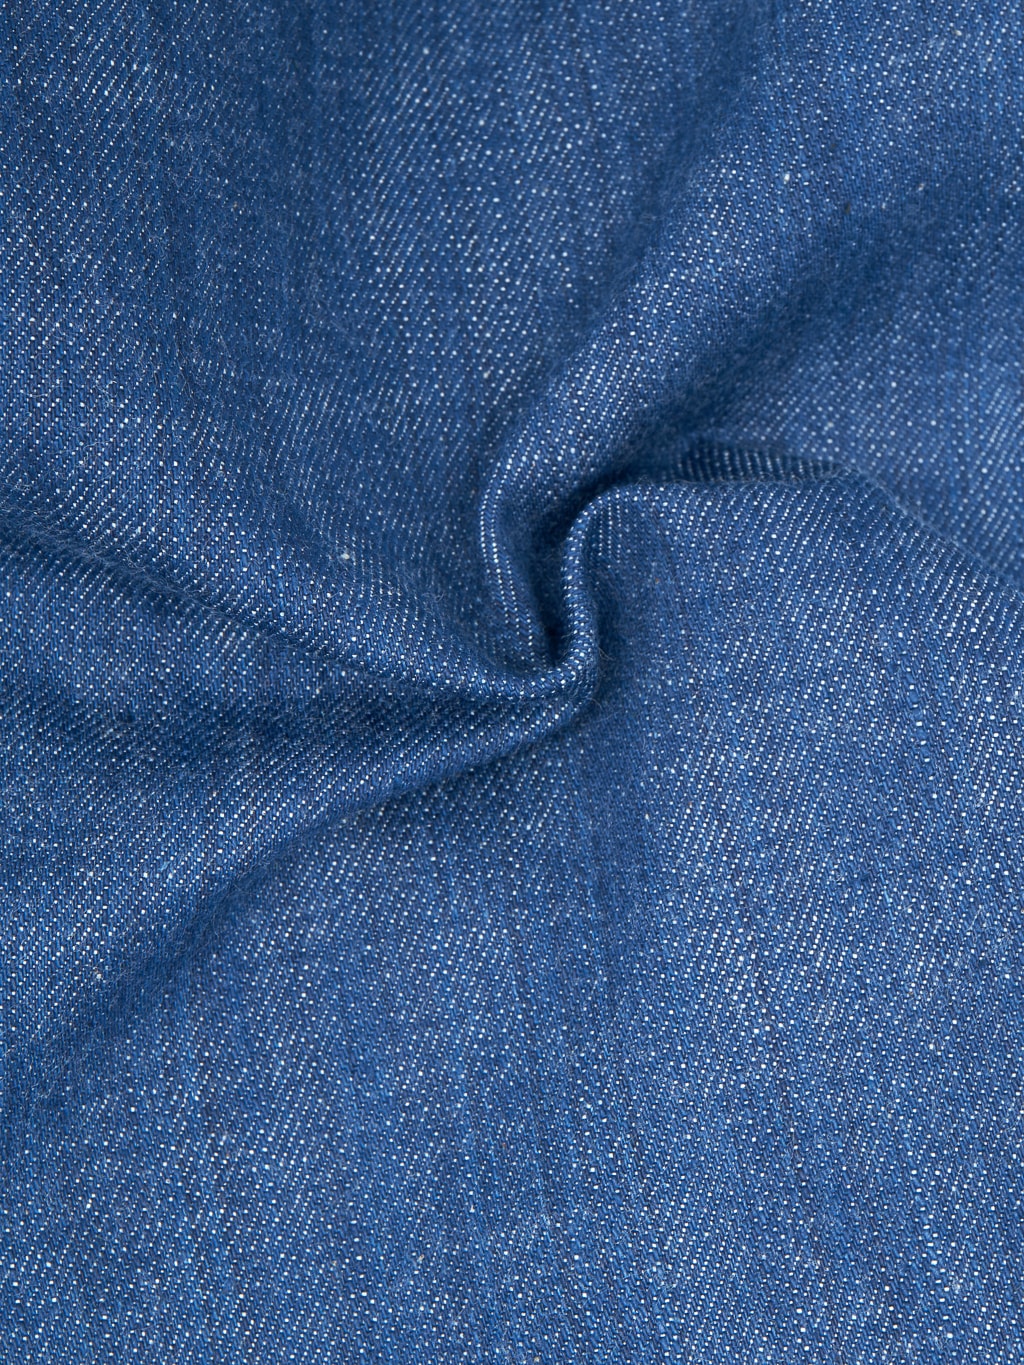 momotaro 0605 ai natural indigo dyed natural tapered denim jeans textura